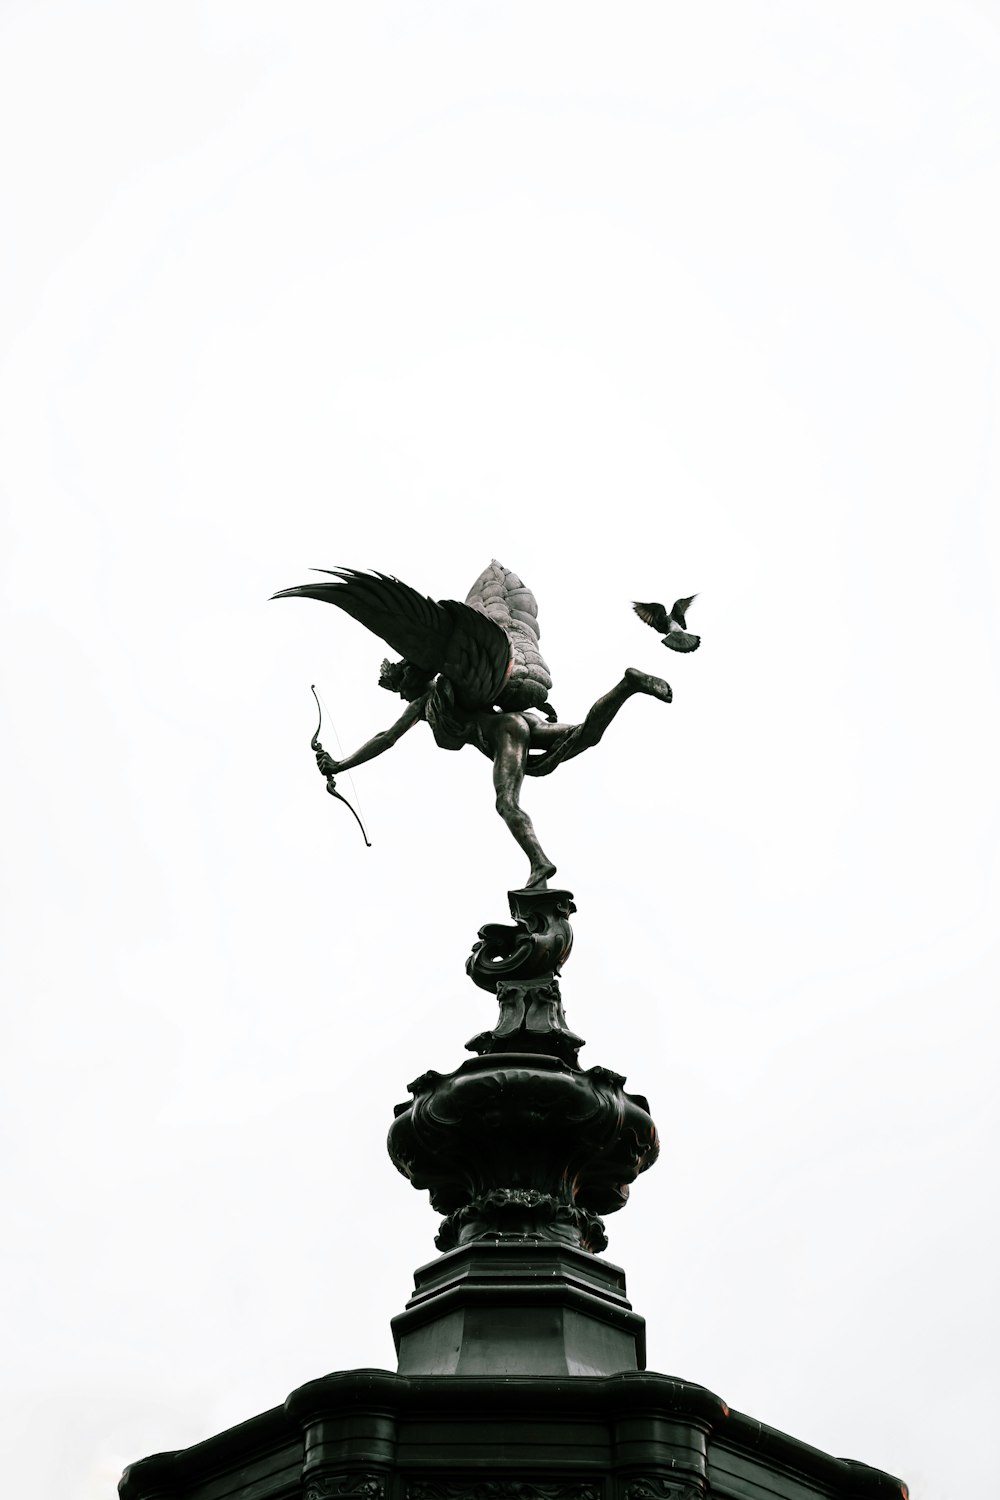 Schwarze Vogelstatue unter weißem Himmel während des Tages